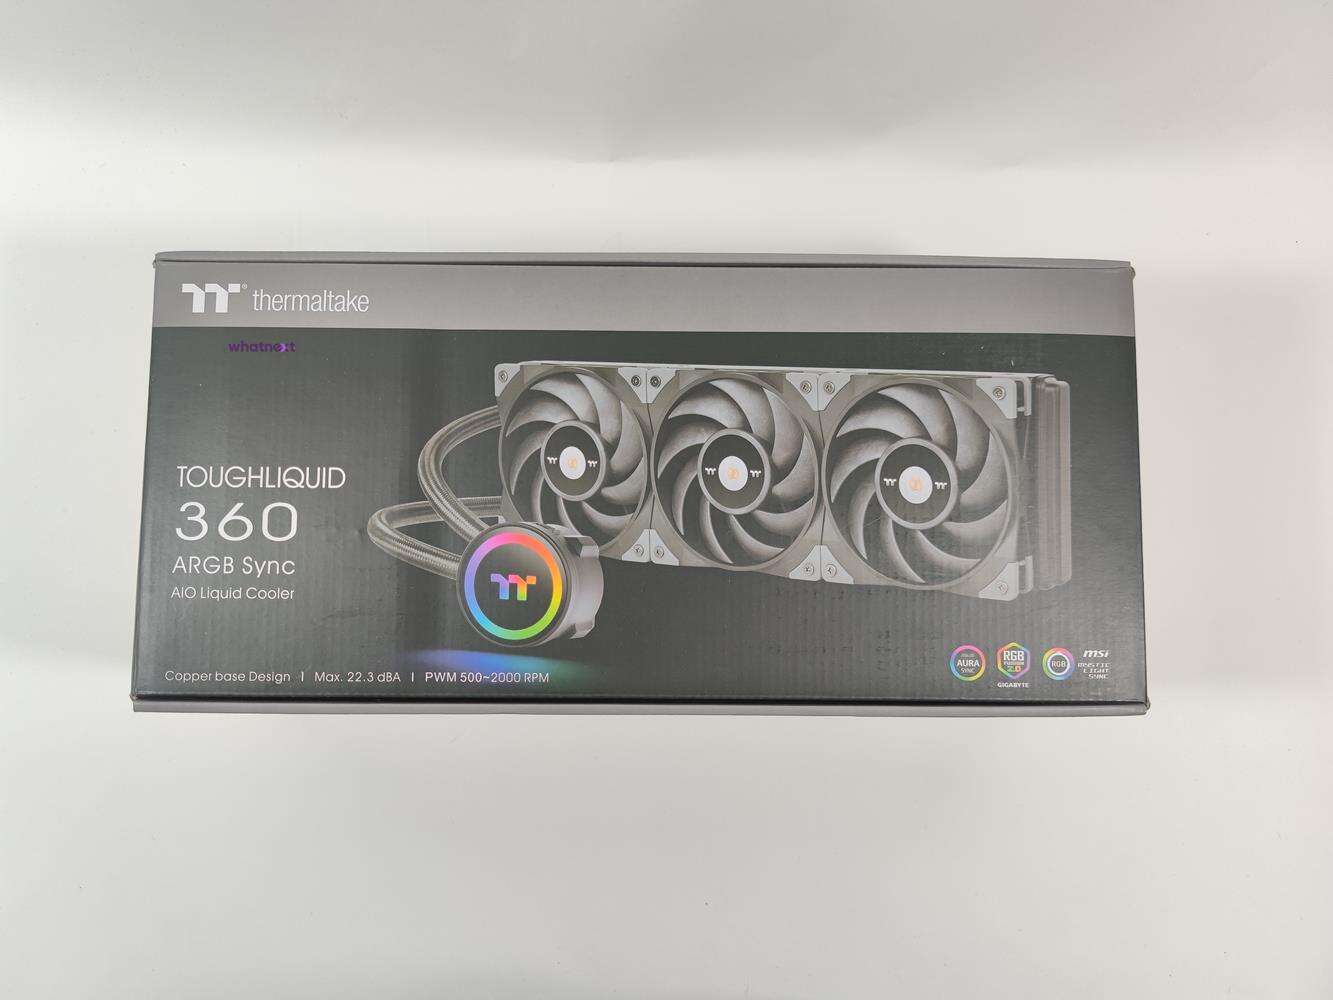 test Thermaltake Toughliquid 360 ARGB Sync, recenzja Thermaltake Toughliquid 360 ARGB Sync, opinia Thermaltake Toughliquid 360 ARGB Sync